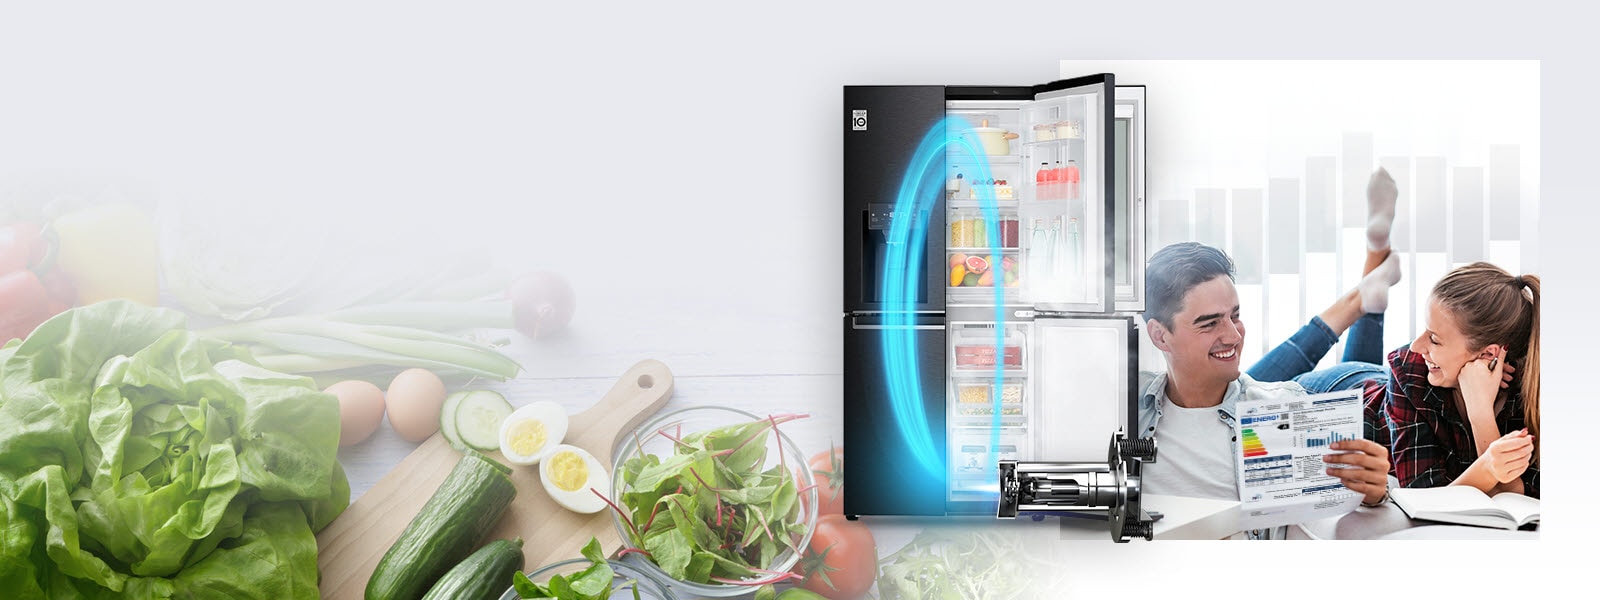 Pe fundal, se vede un frigider LG cu o ușă deschisă, lăsând să se vadă produsele alimentare și băuturile din interior, împreună cu o imagine mărită a unor produse alimentare proaspete. Chiar în fața lui, se vede un Inverter Linear Compressor de la LG, cu un oval albastru iluminat în stil neon, indicând energia aparatului în frigider. În imagine, se văd și un bărbat și o femeie care își zâmbesc reciproc, în timp ce bărbatul ține în mână eticheta energetică a frigiderului.